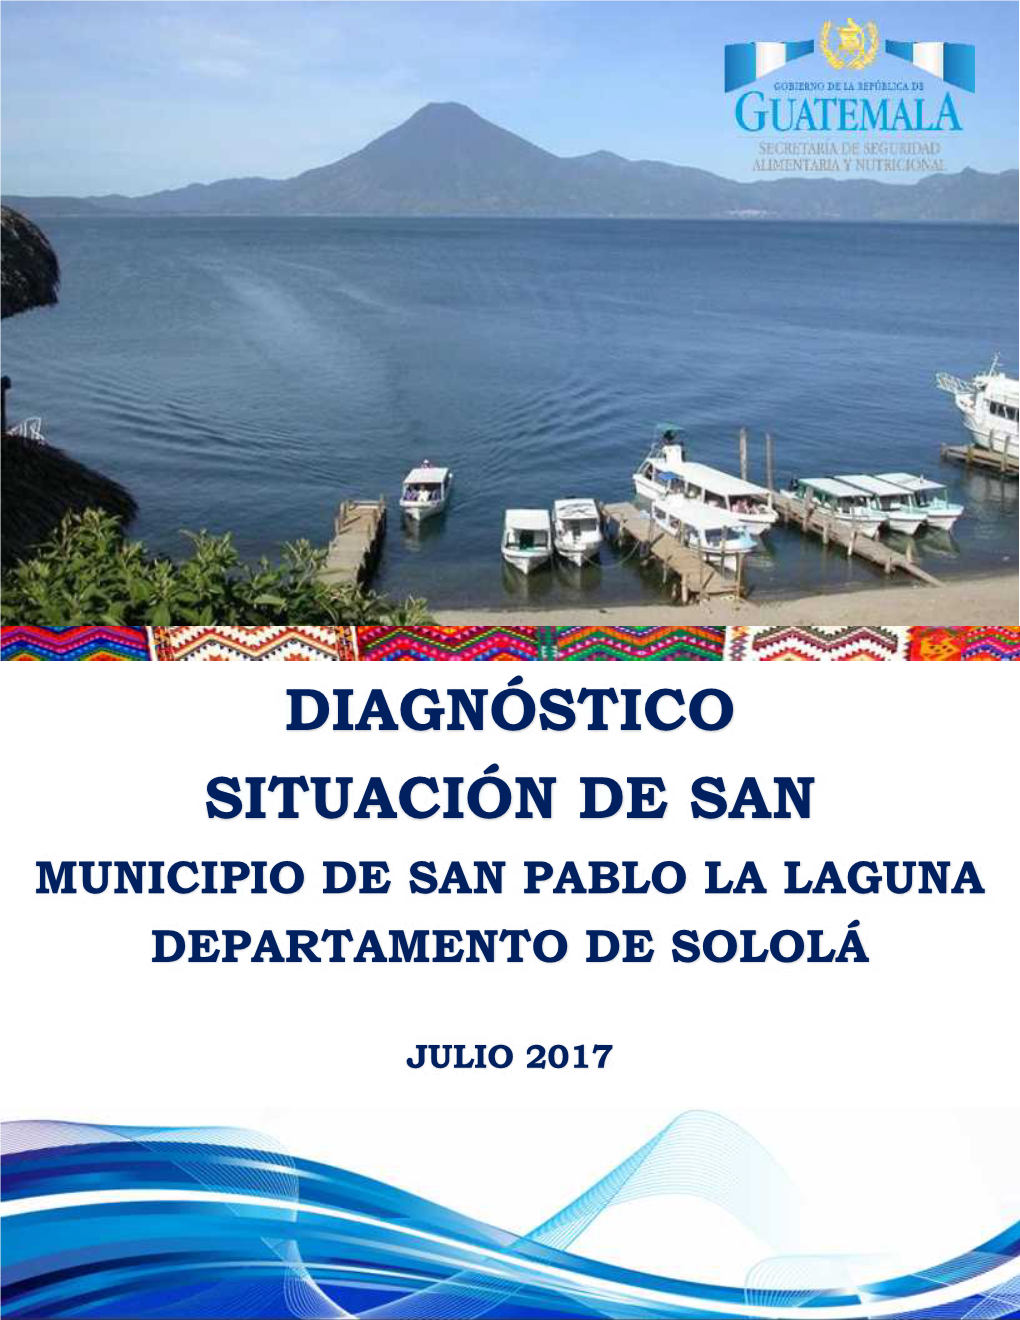 Diagnóstico Situación De San Municipio De San Pablo La Laguna Departamento De Sololá